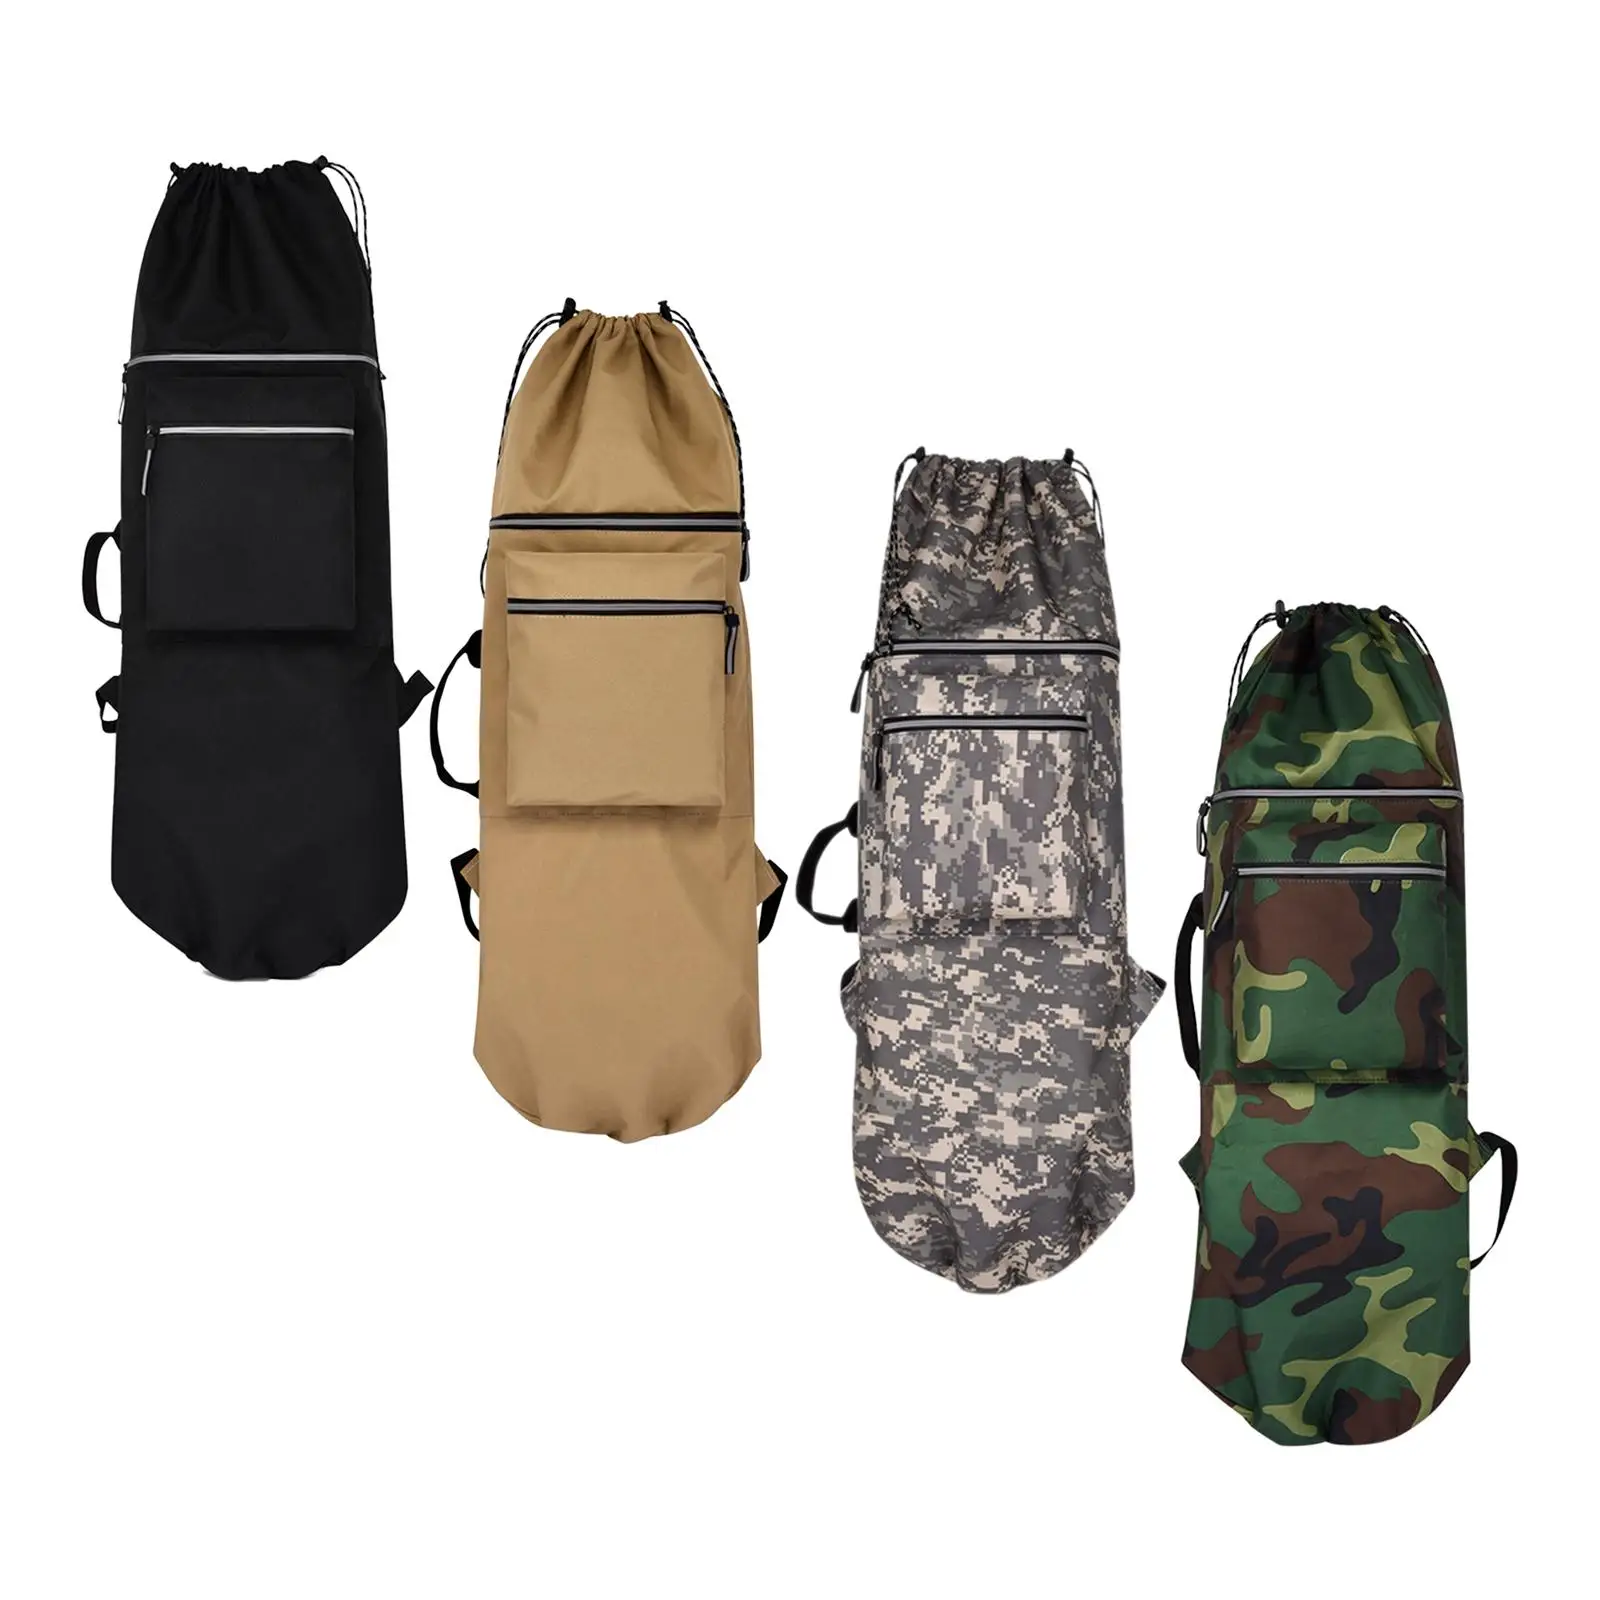 Skateboard Backpack Bag with 2 Pocket Water Resistant Adjustable Straps Carrier